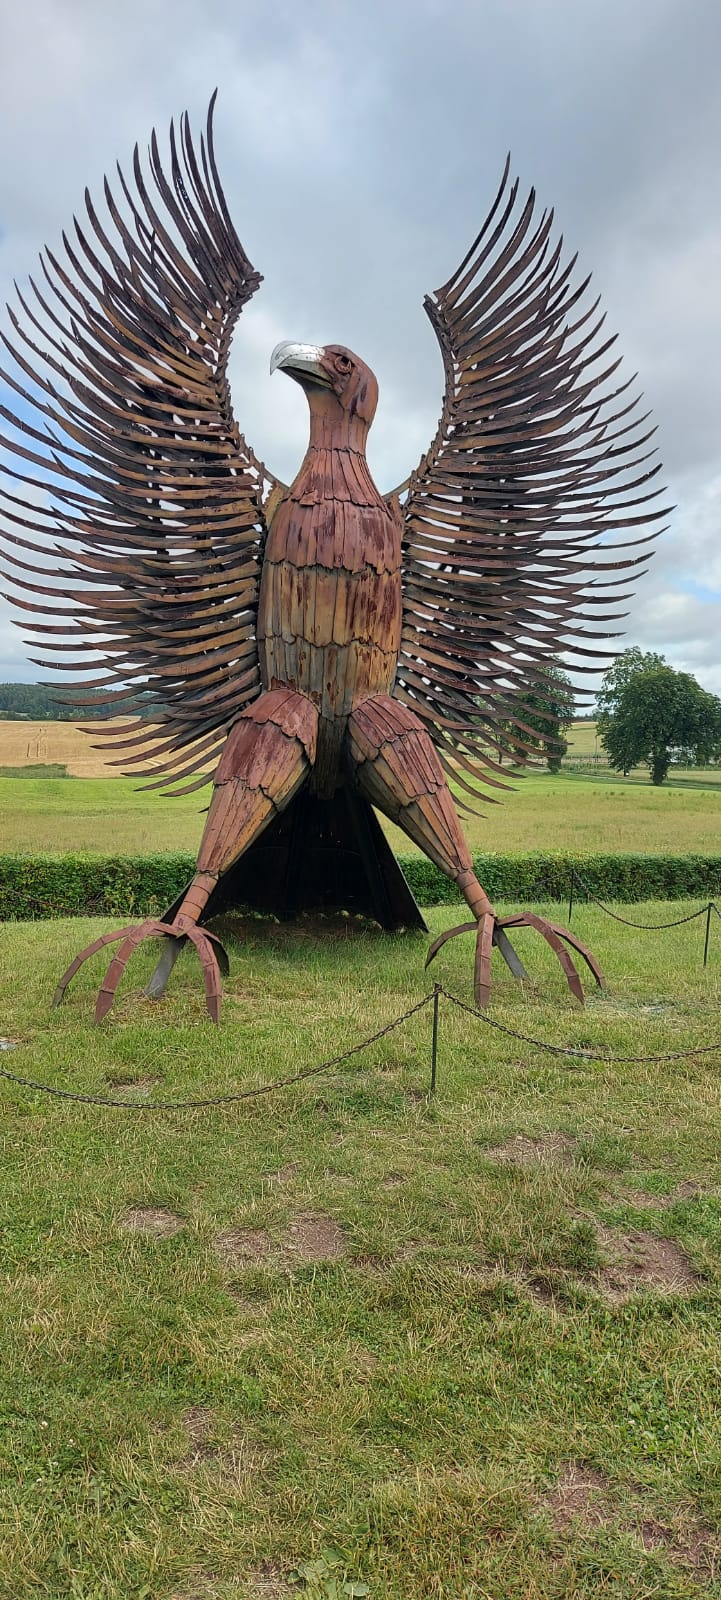 Metalowa rzeźba wysokiego orła z rozpiętymi skrzydłami oraz głową zwróconą ku górze.